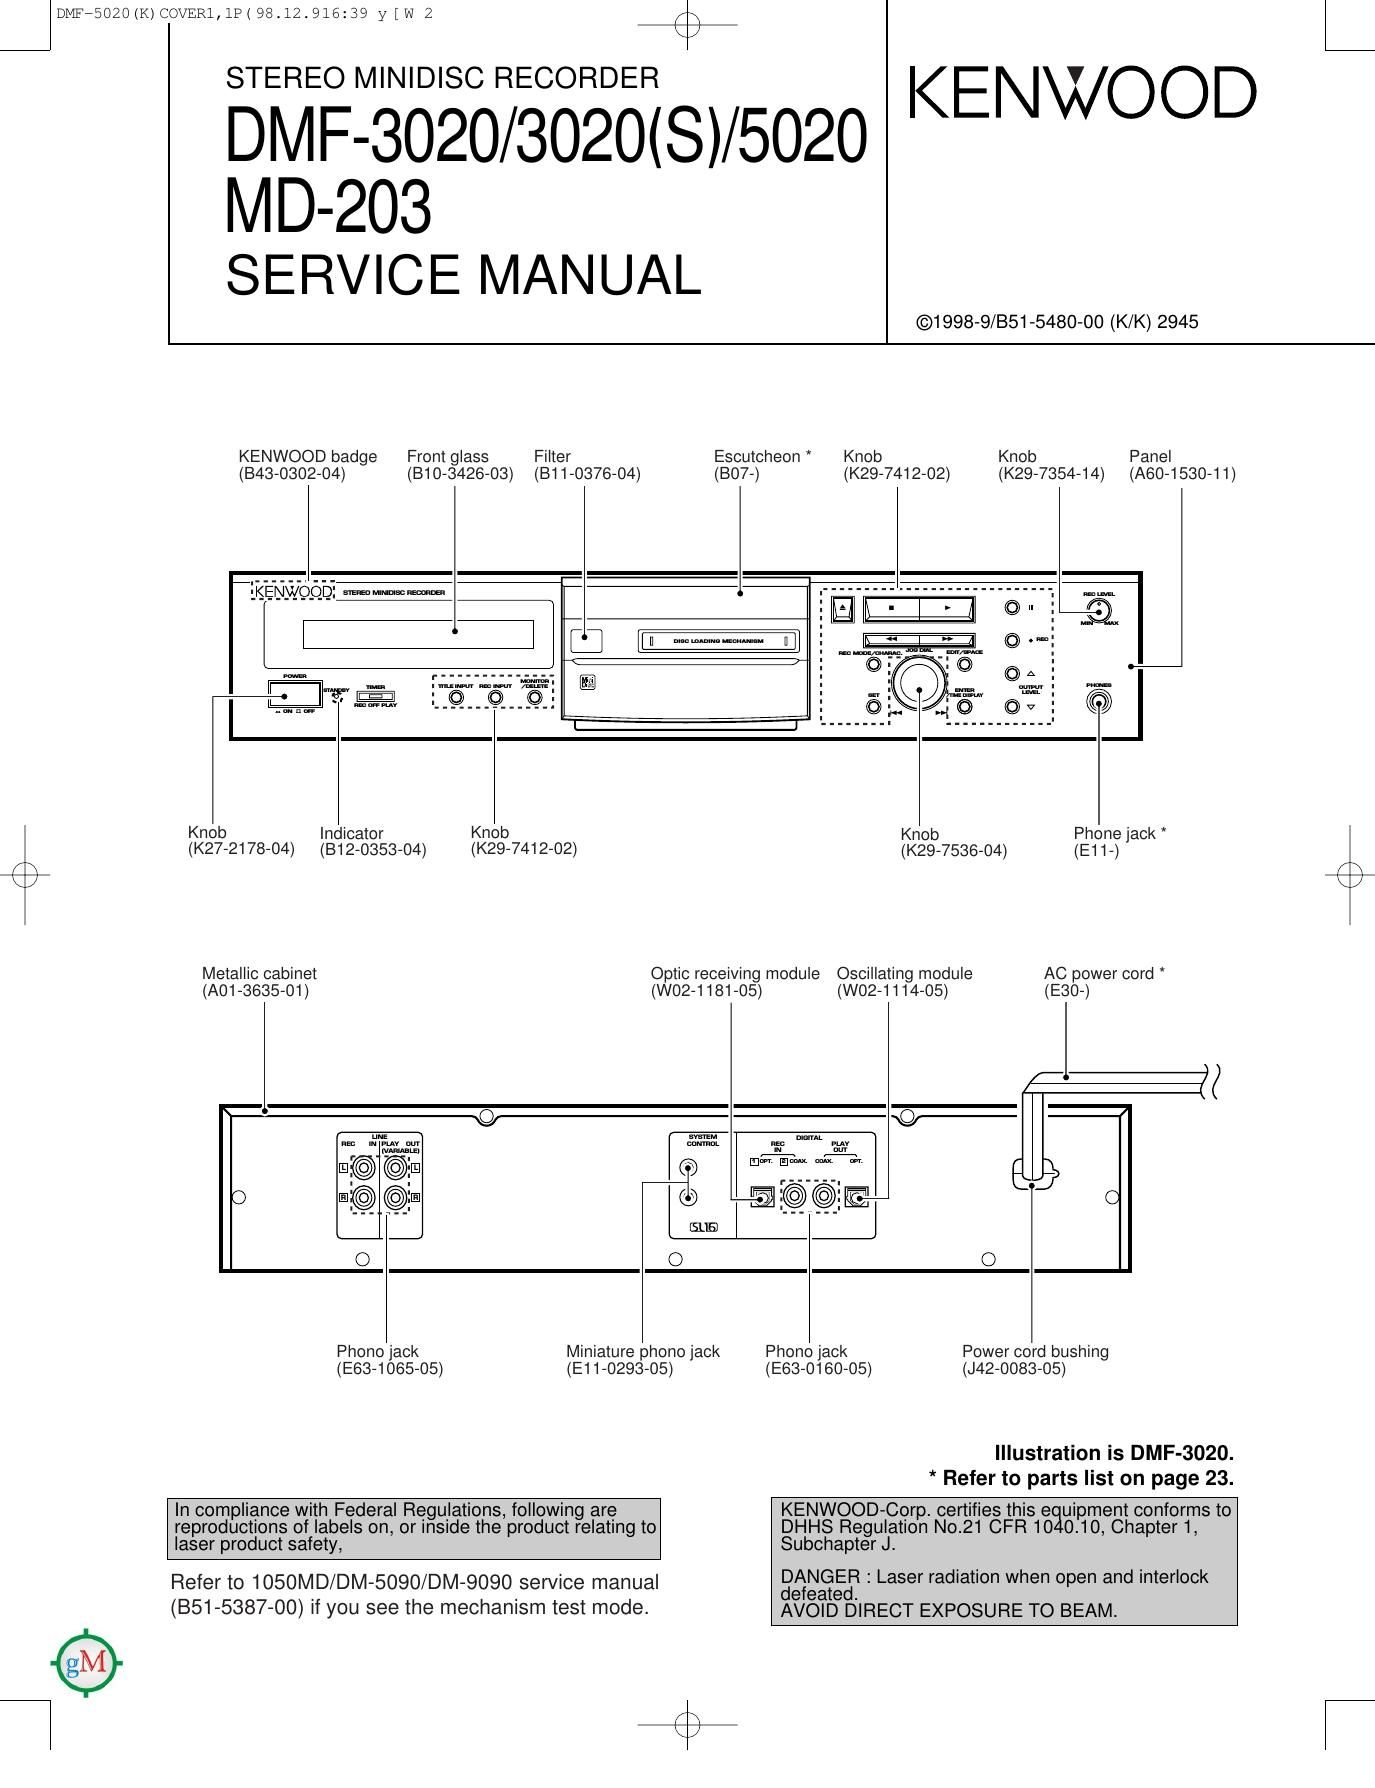 Kenwood DMF 3020 Service Manual